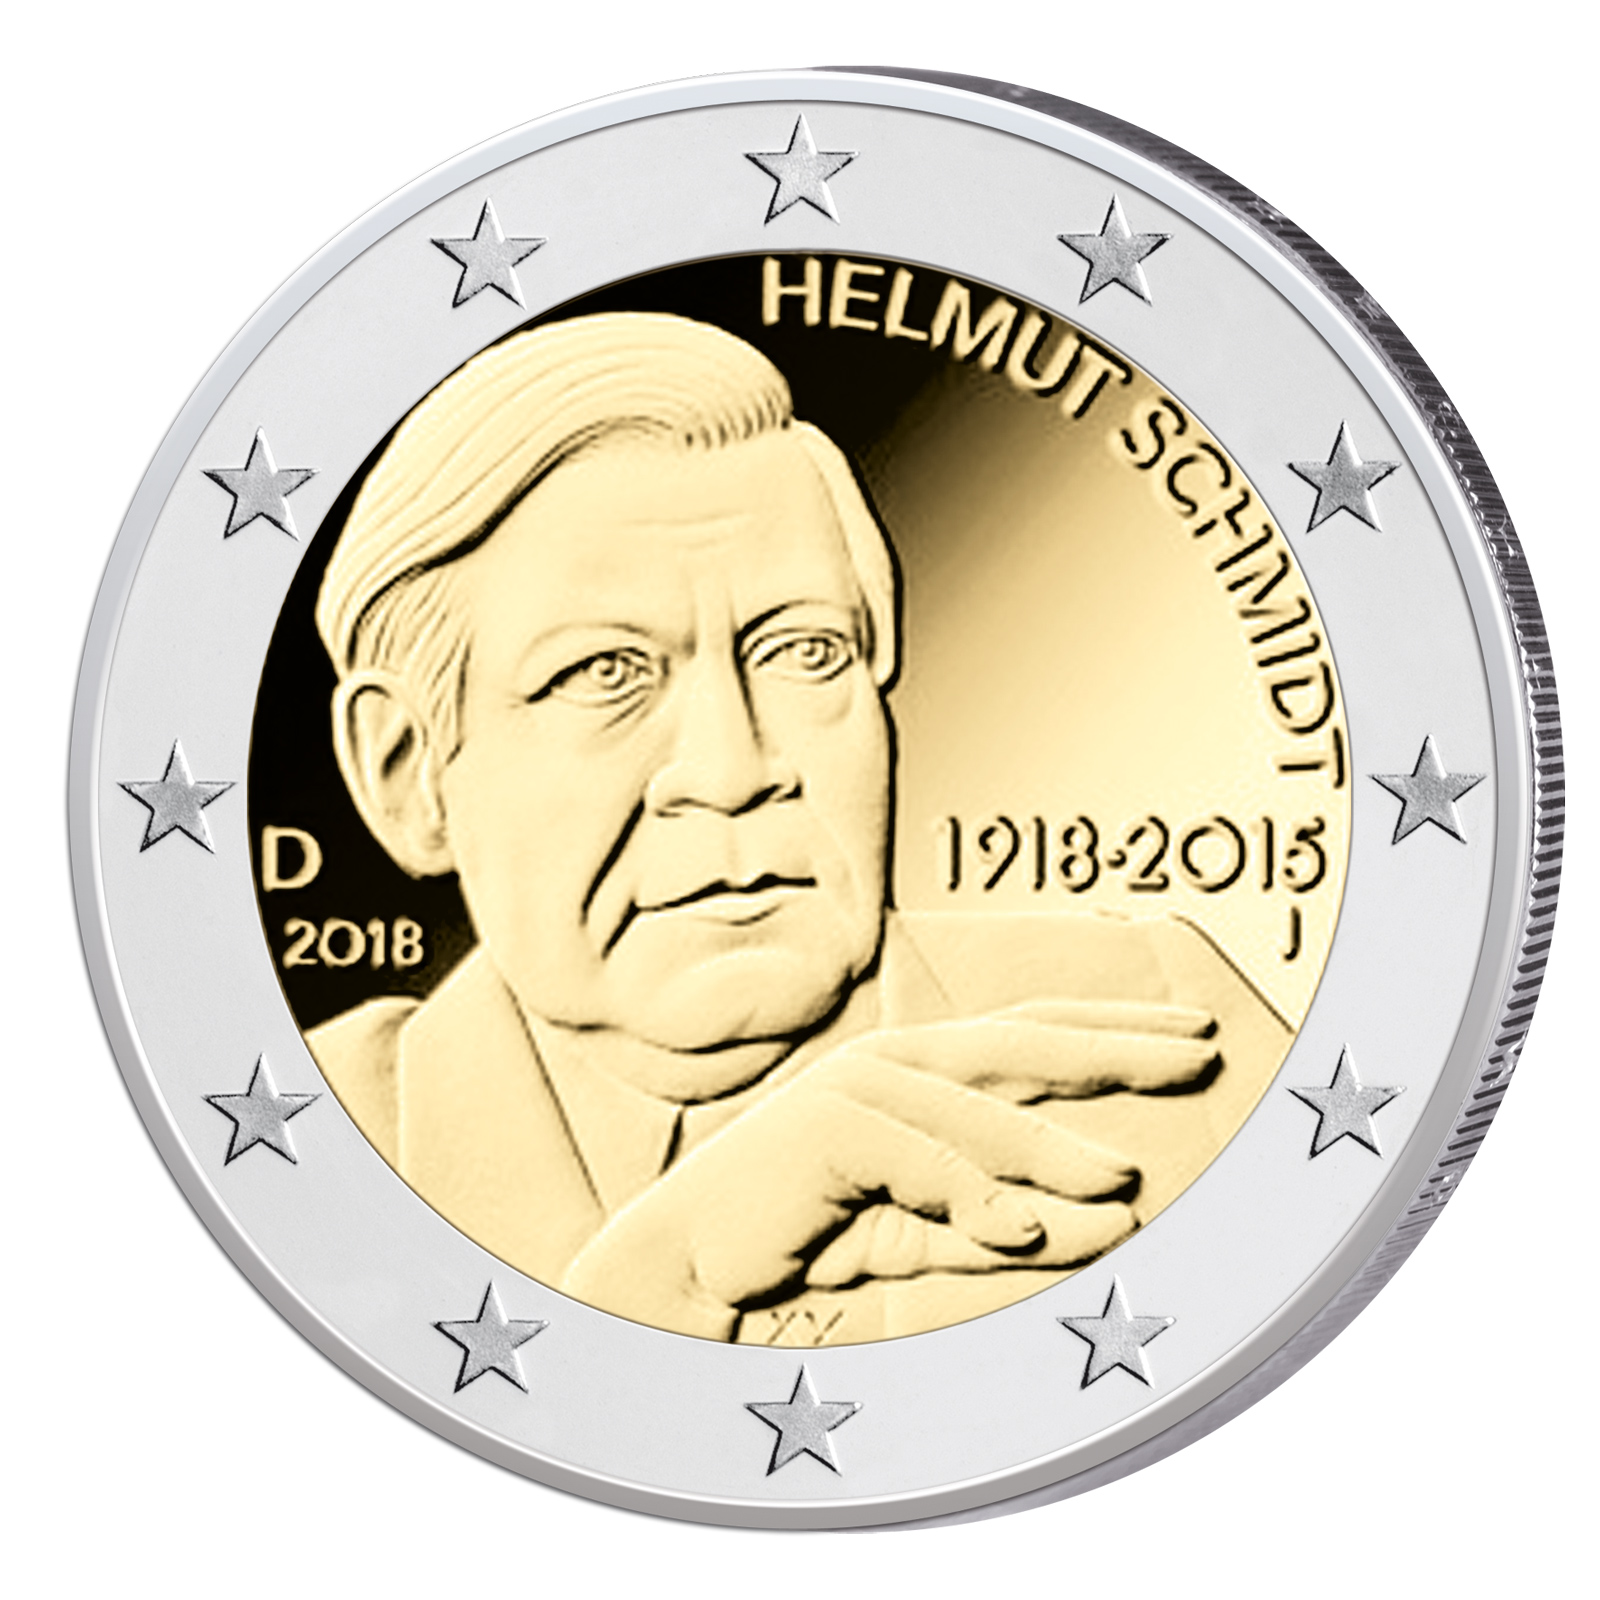 2 Euro Gedenkmünzen 2018 – Münzbilder und Informationen zu den Themen